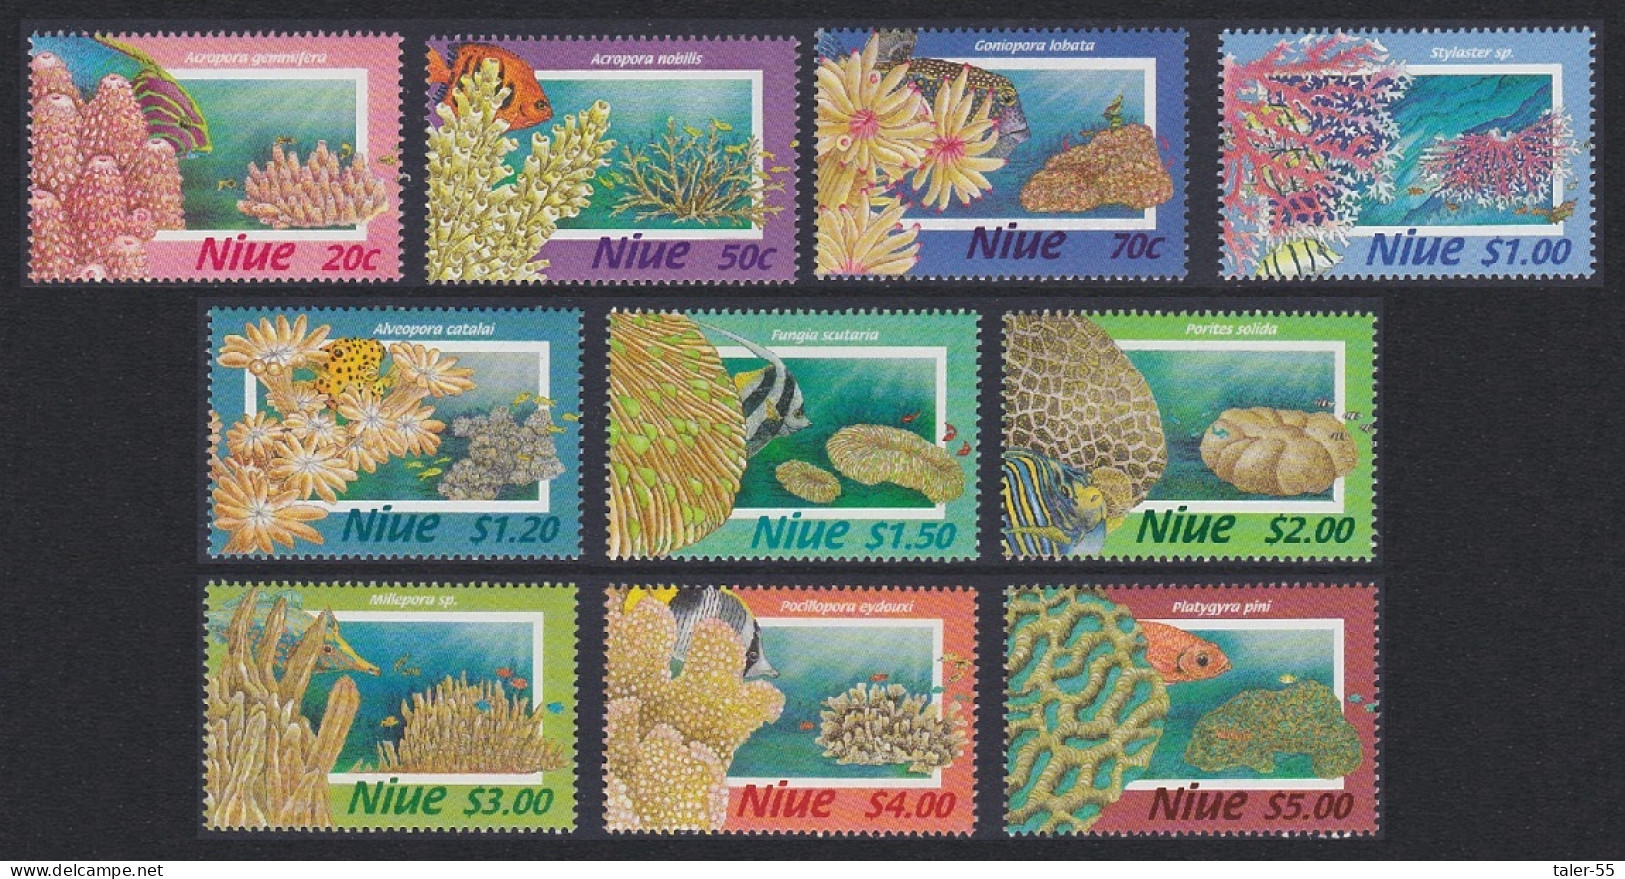 Niue Corals 10v 1996 MNH SG#807-816 - Niue